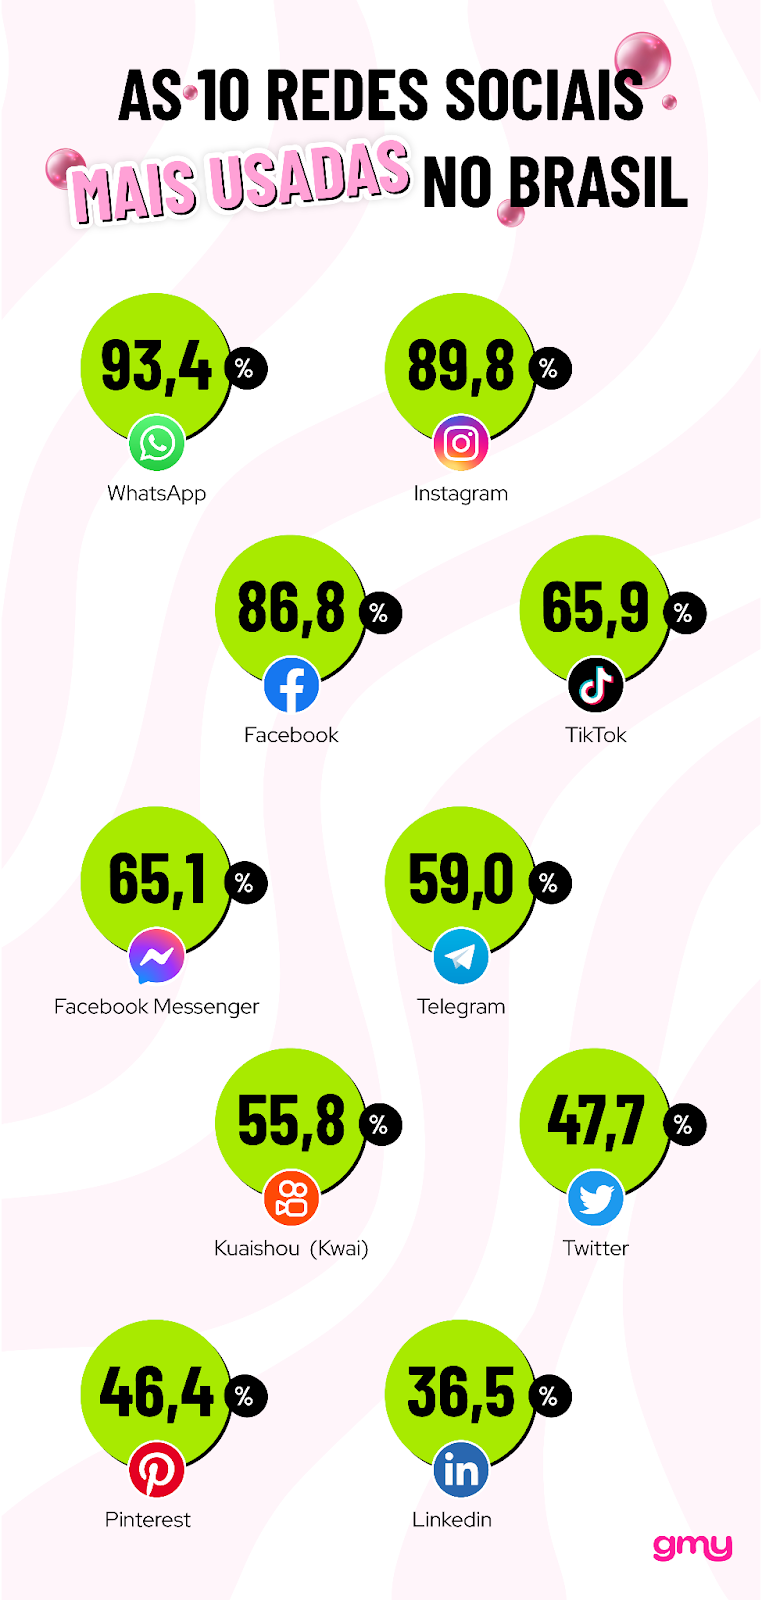 Infográfico: As 10 redes sociais mais usadas no Brasil. Tendências para redes sociais.